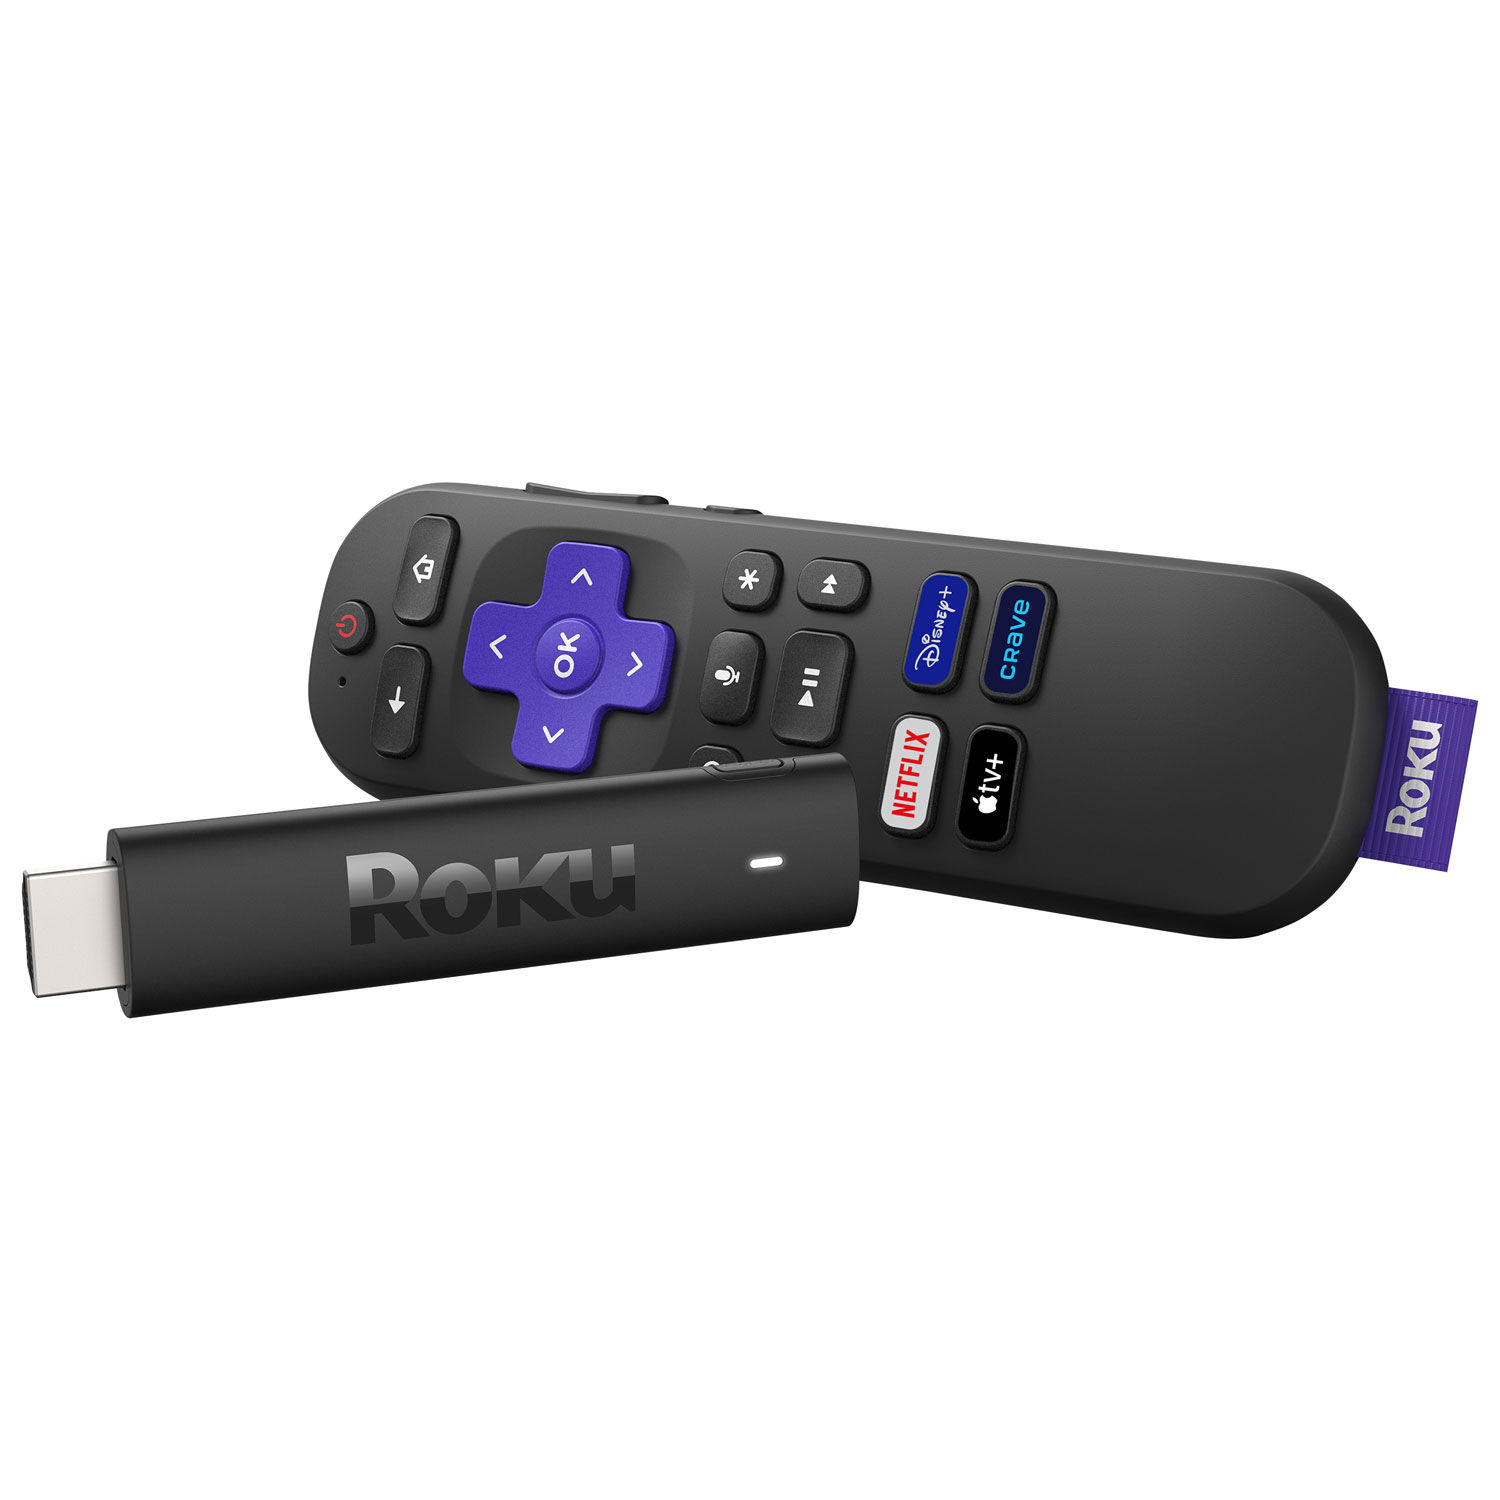 Roku Streaming Stick 4K Media Streamer with Remote